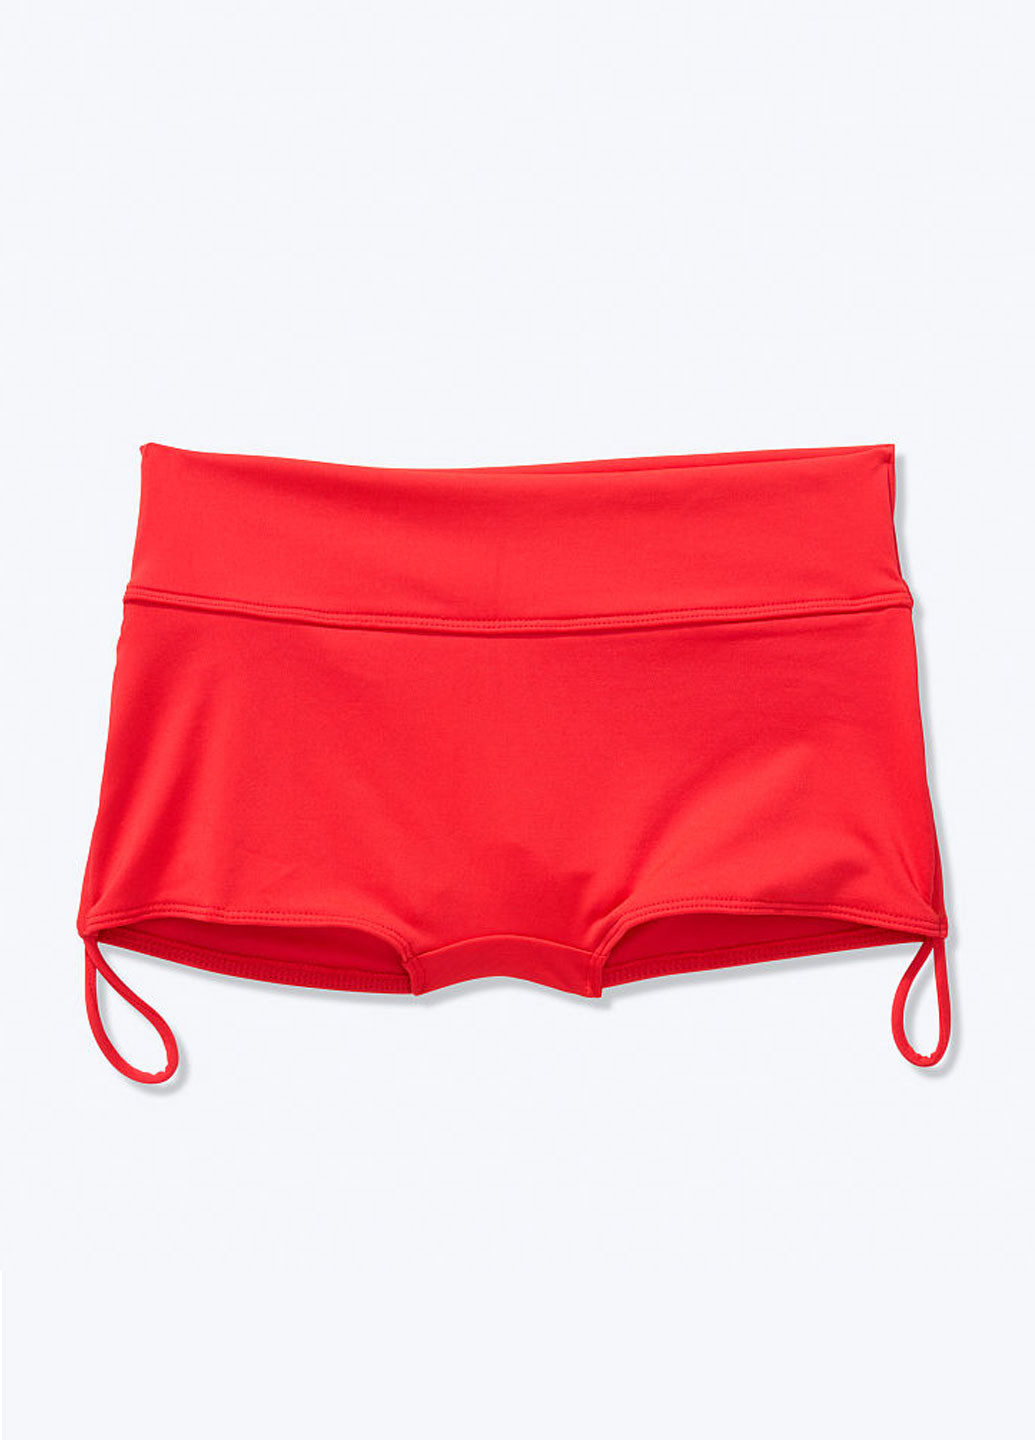 Красный летний купальник (лиф, трусики) бикини Victoria's Secret